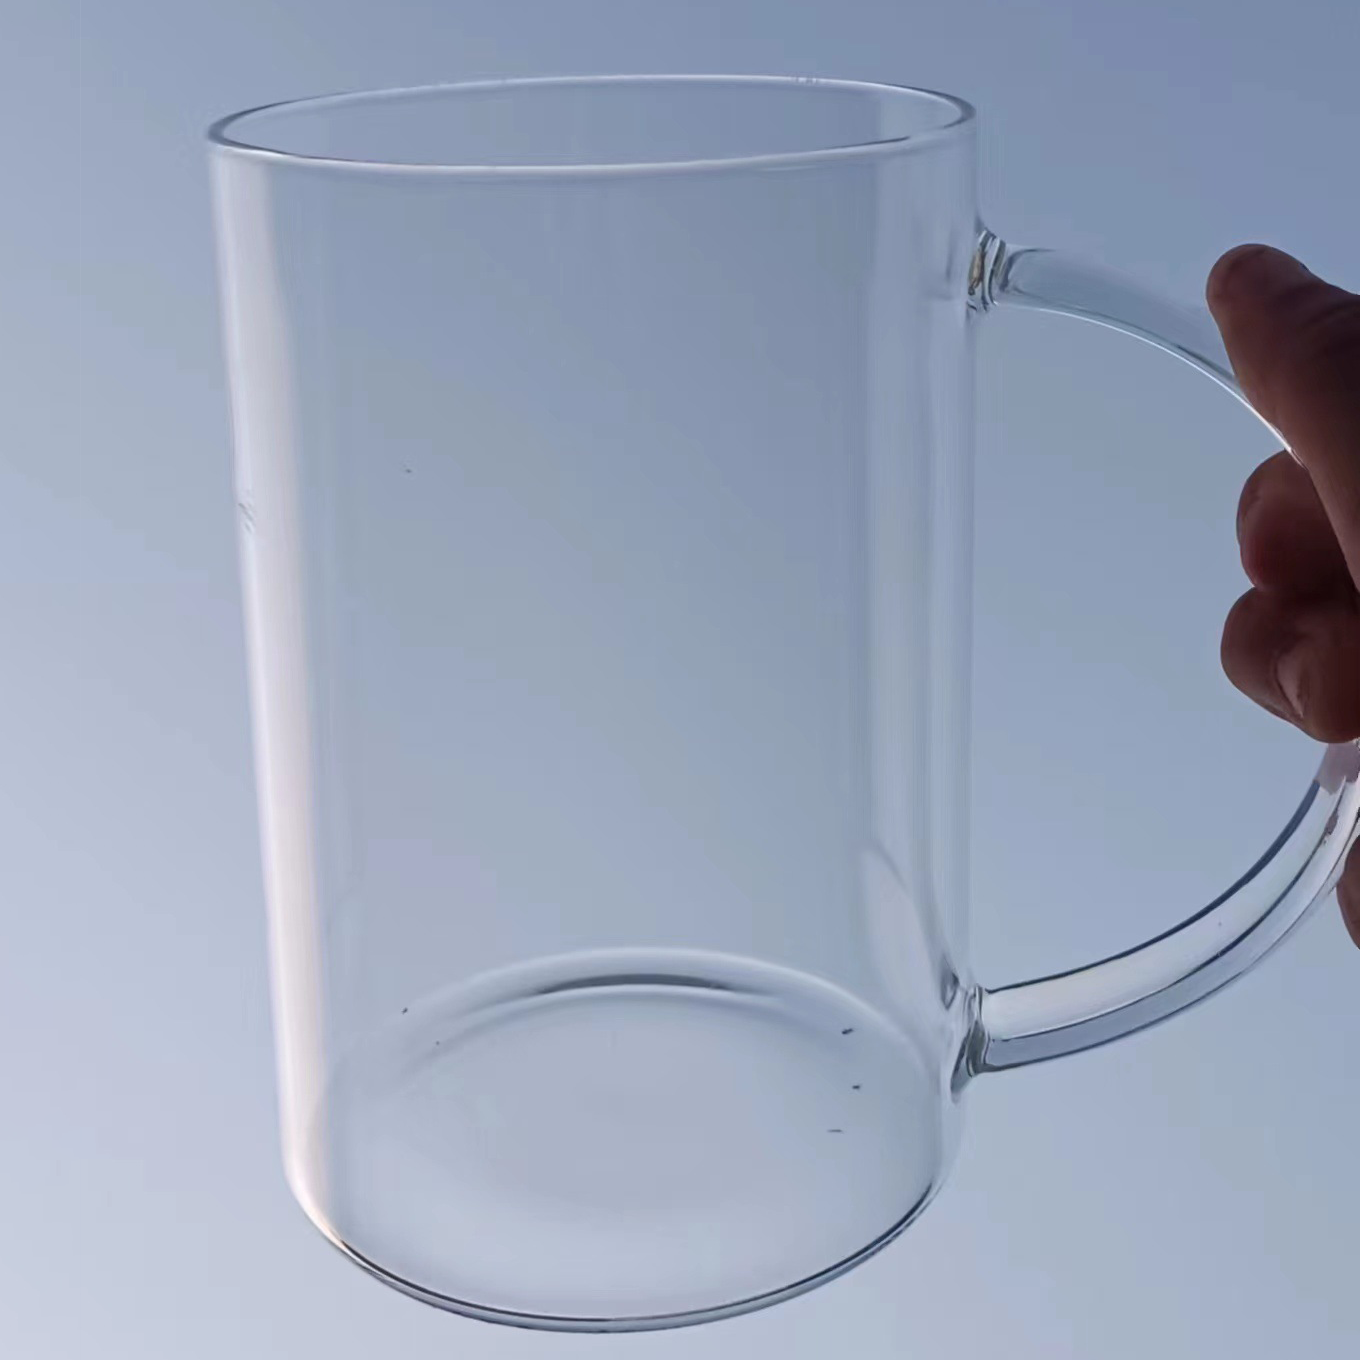 『客製贈品』超大容量玻璃杯 |  客製化禮品、禮贈品專家